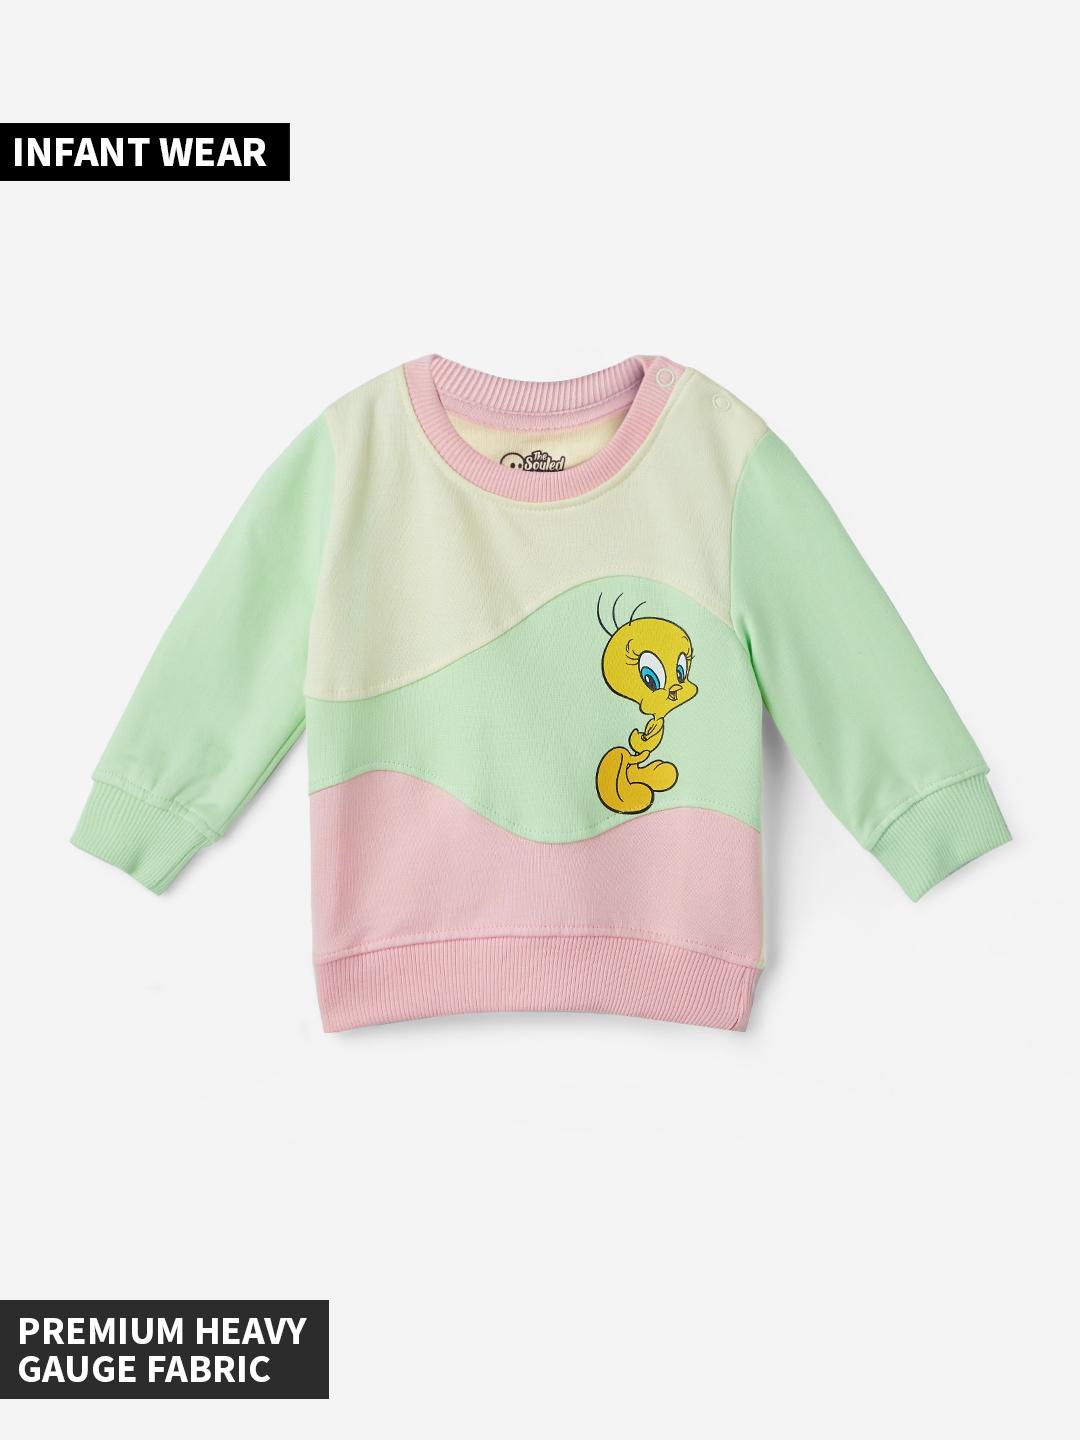 Girls Looney Tunes: Tweety Girls Cotton Sweatshirts